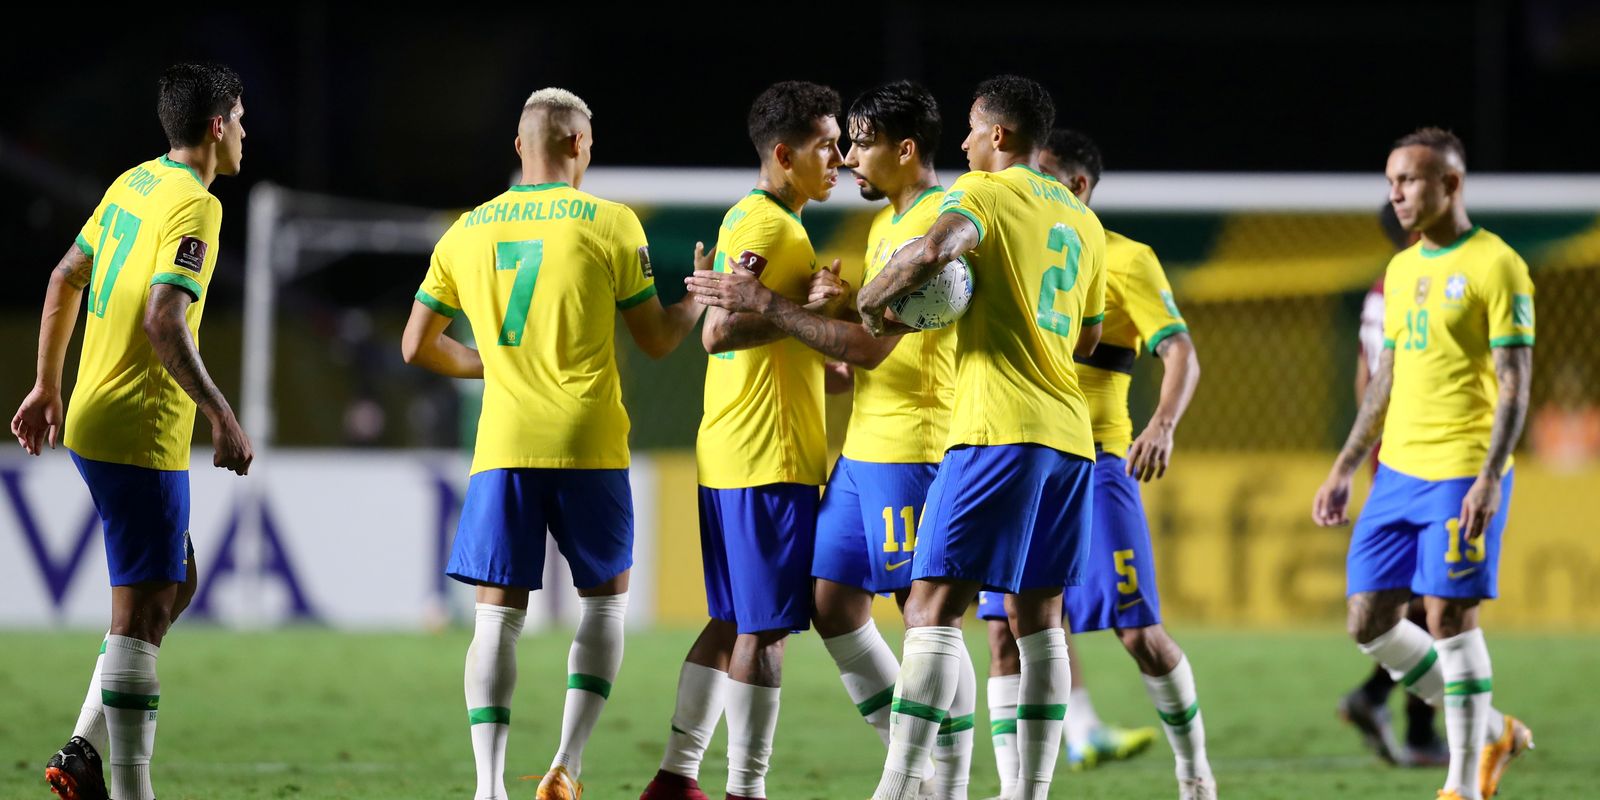 Conmebol confirma datas de jogos do Brasil para março